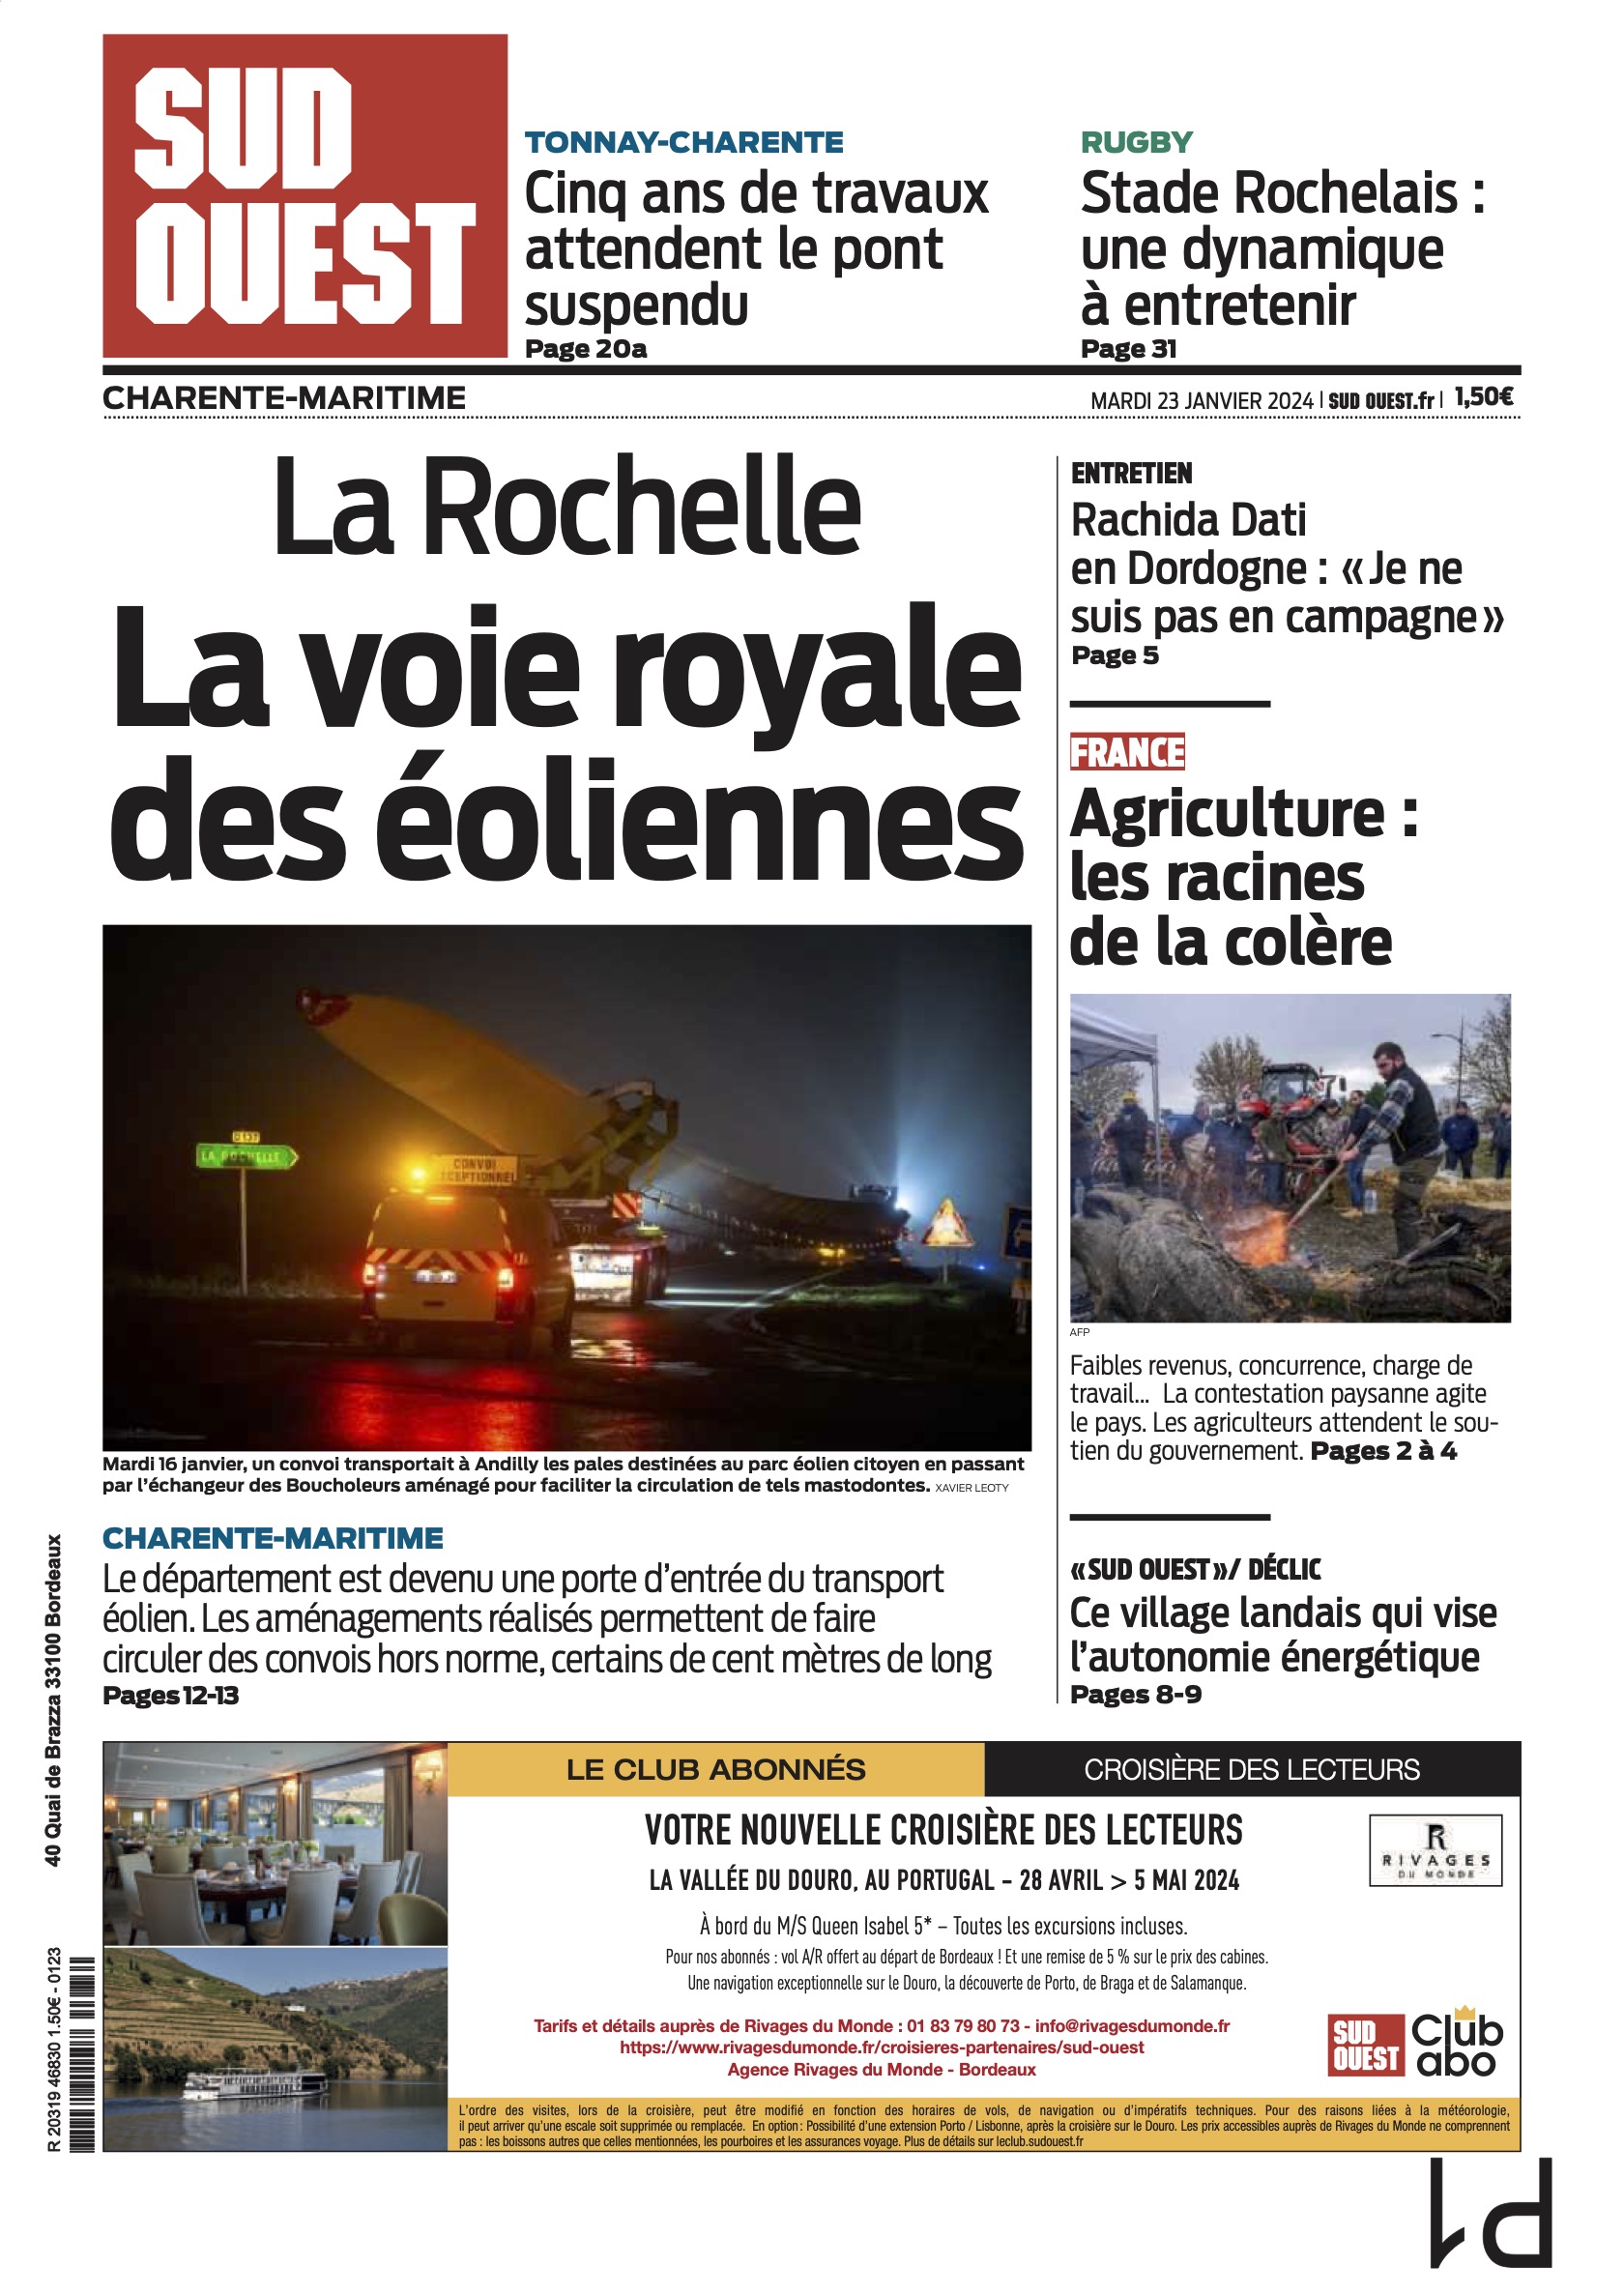 La Rochelle : La voix royale des éoliennes